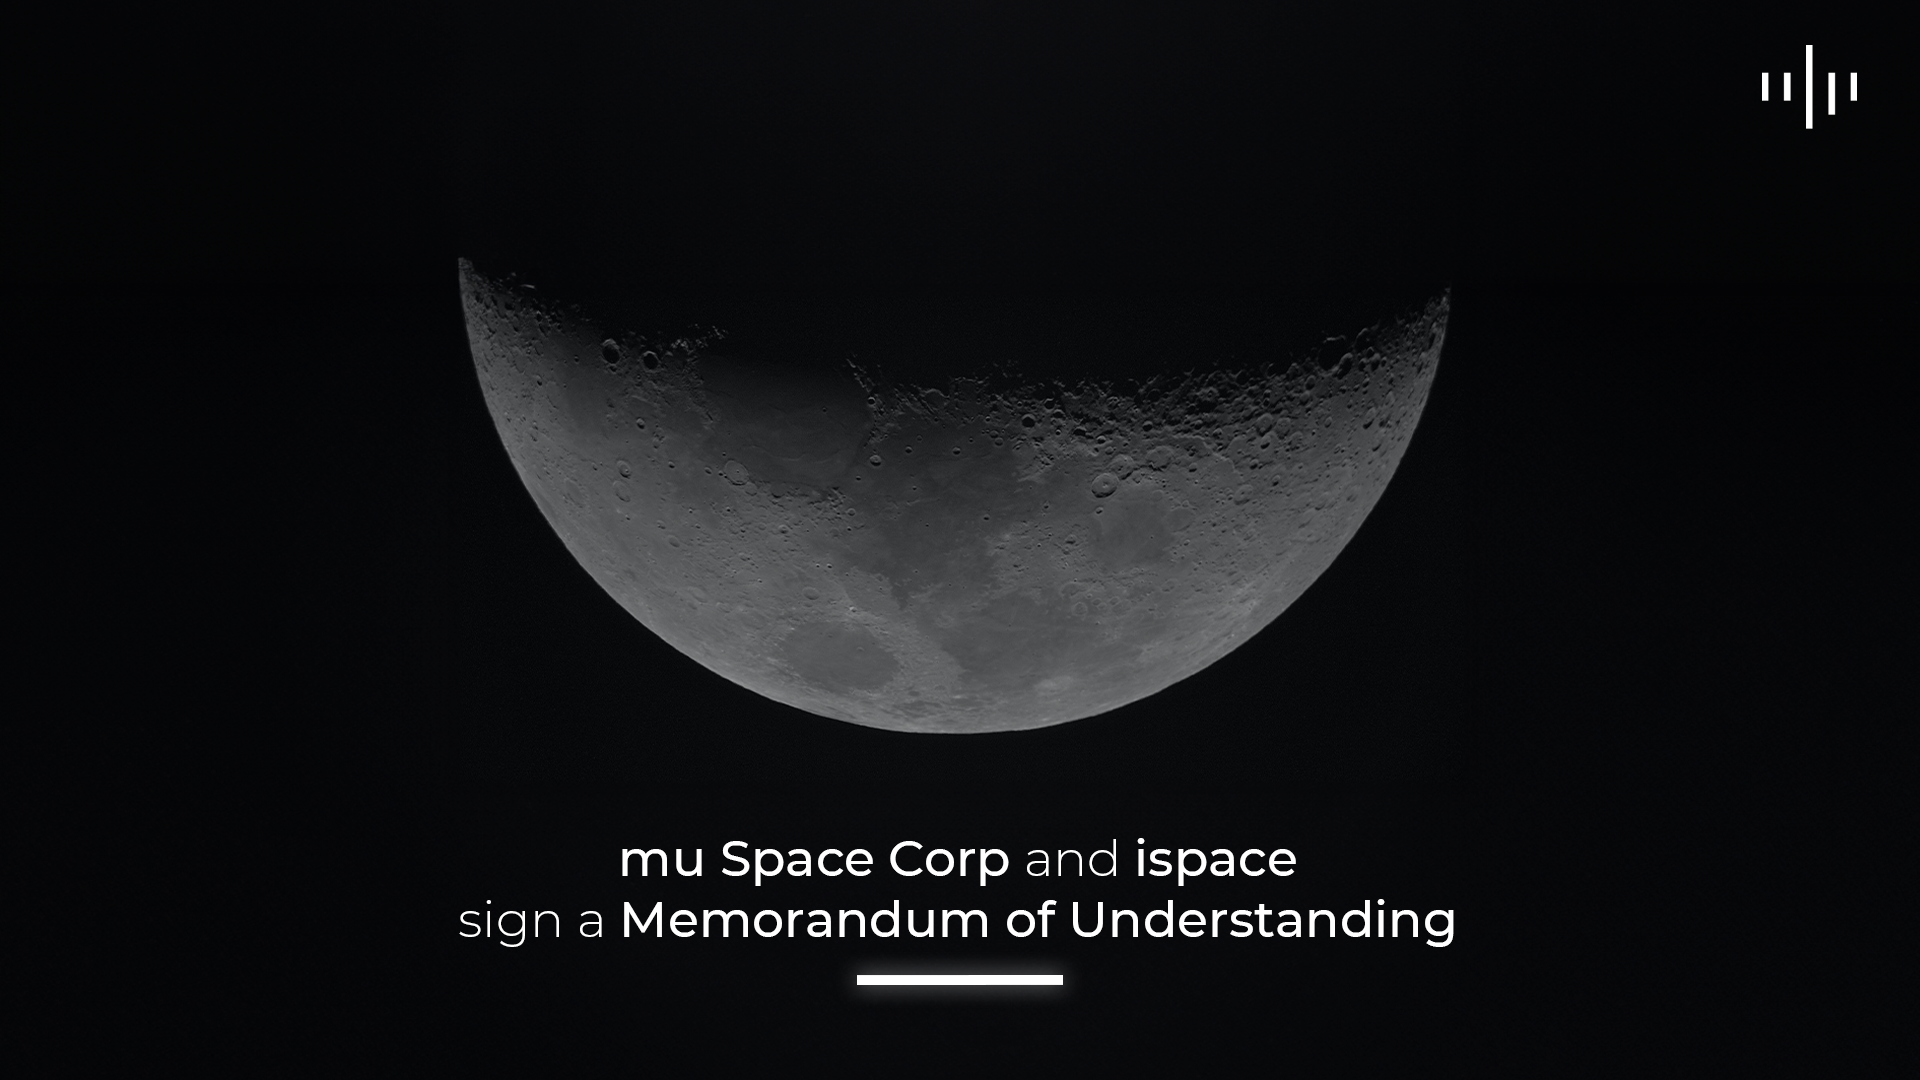 mu Space ลงนามบันทึกความเข้าใจกับ ispace สำหรับภารกิจ Lunar Mission ในอนาคต